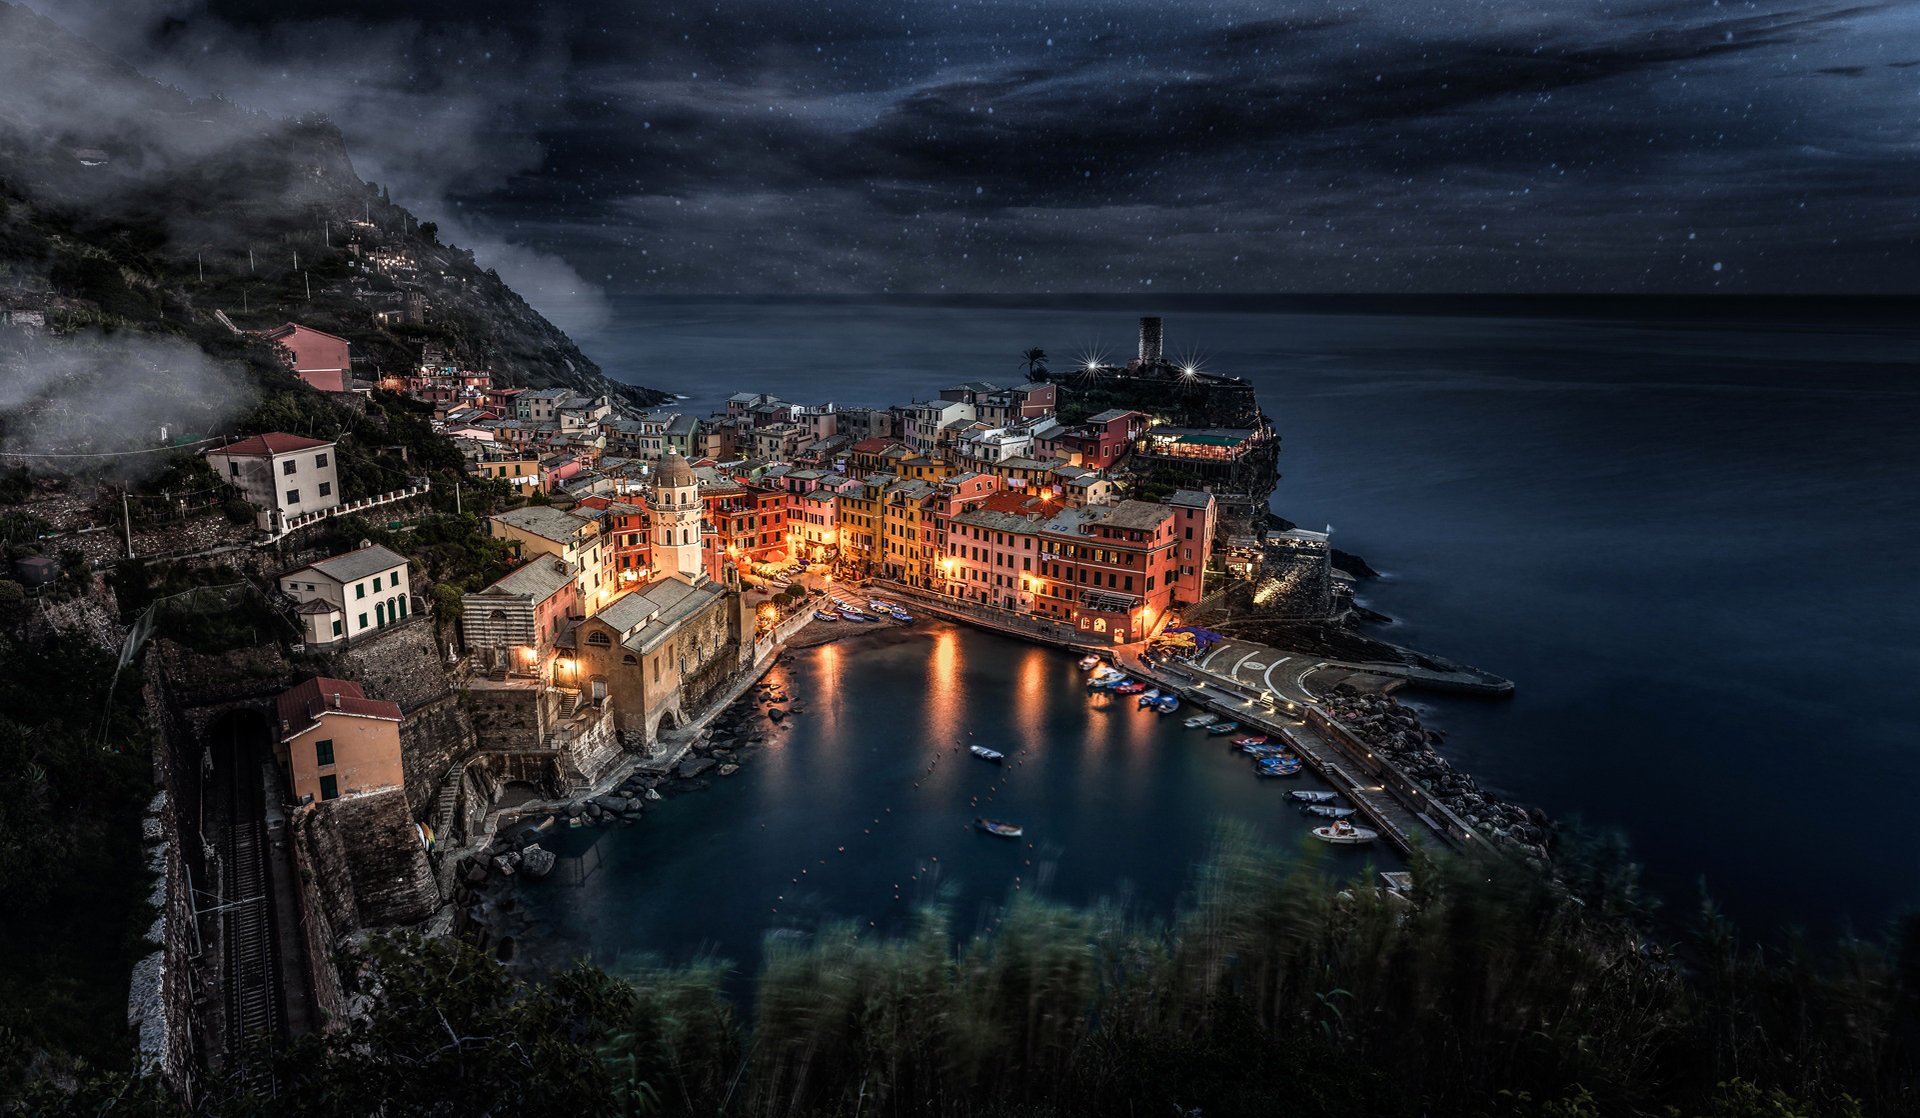 liguria italia manarola città mare rocce case barche notte stelle cielo luce luci